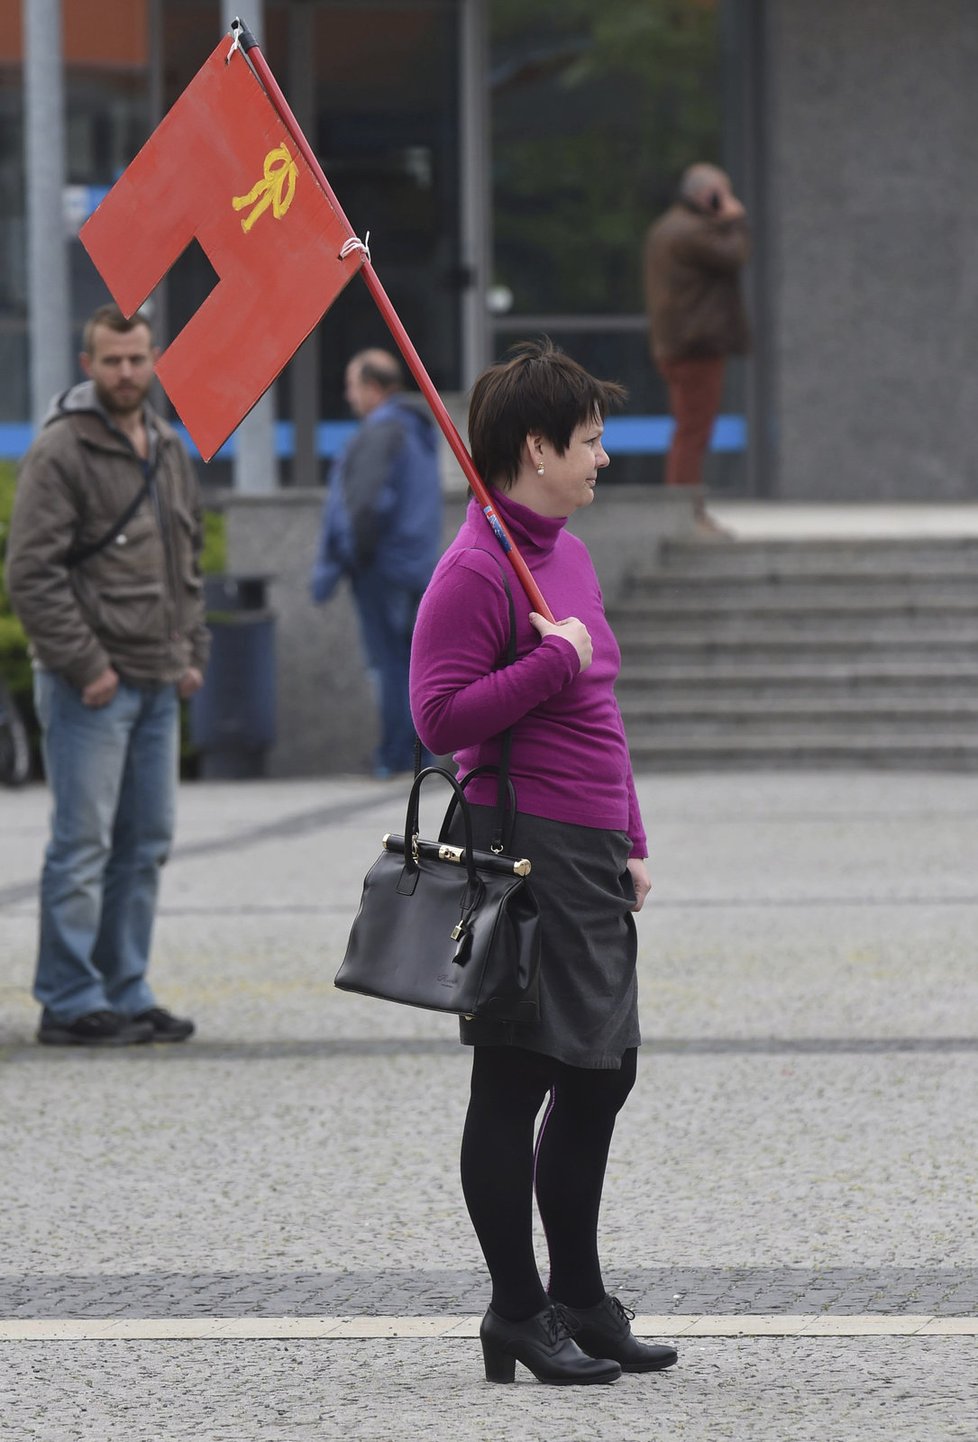 Návštěva Miloše Zemana v Olomouckém kraji: Žena s červenými trenkami před budovou krajského úřadu v Olomouci